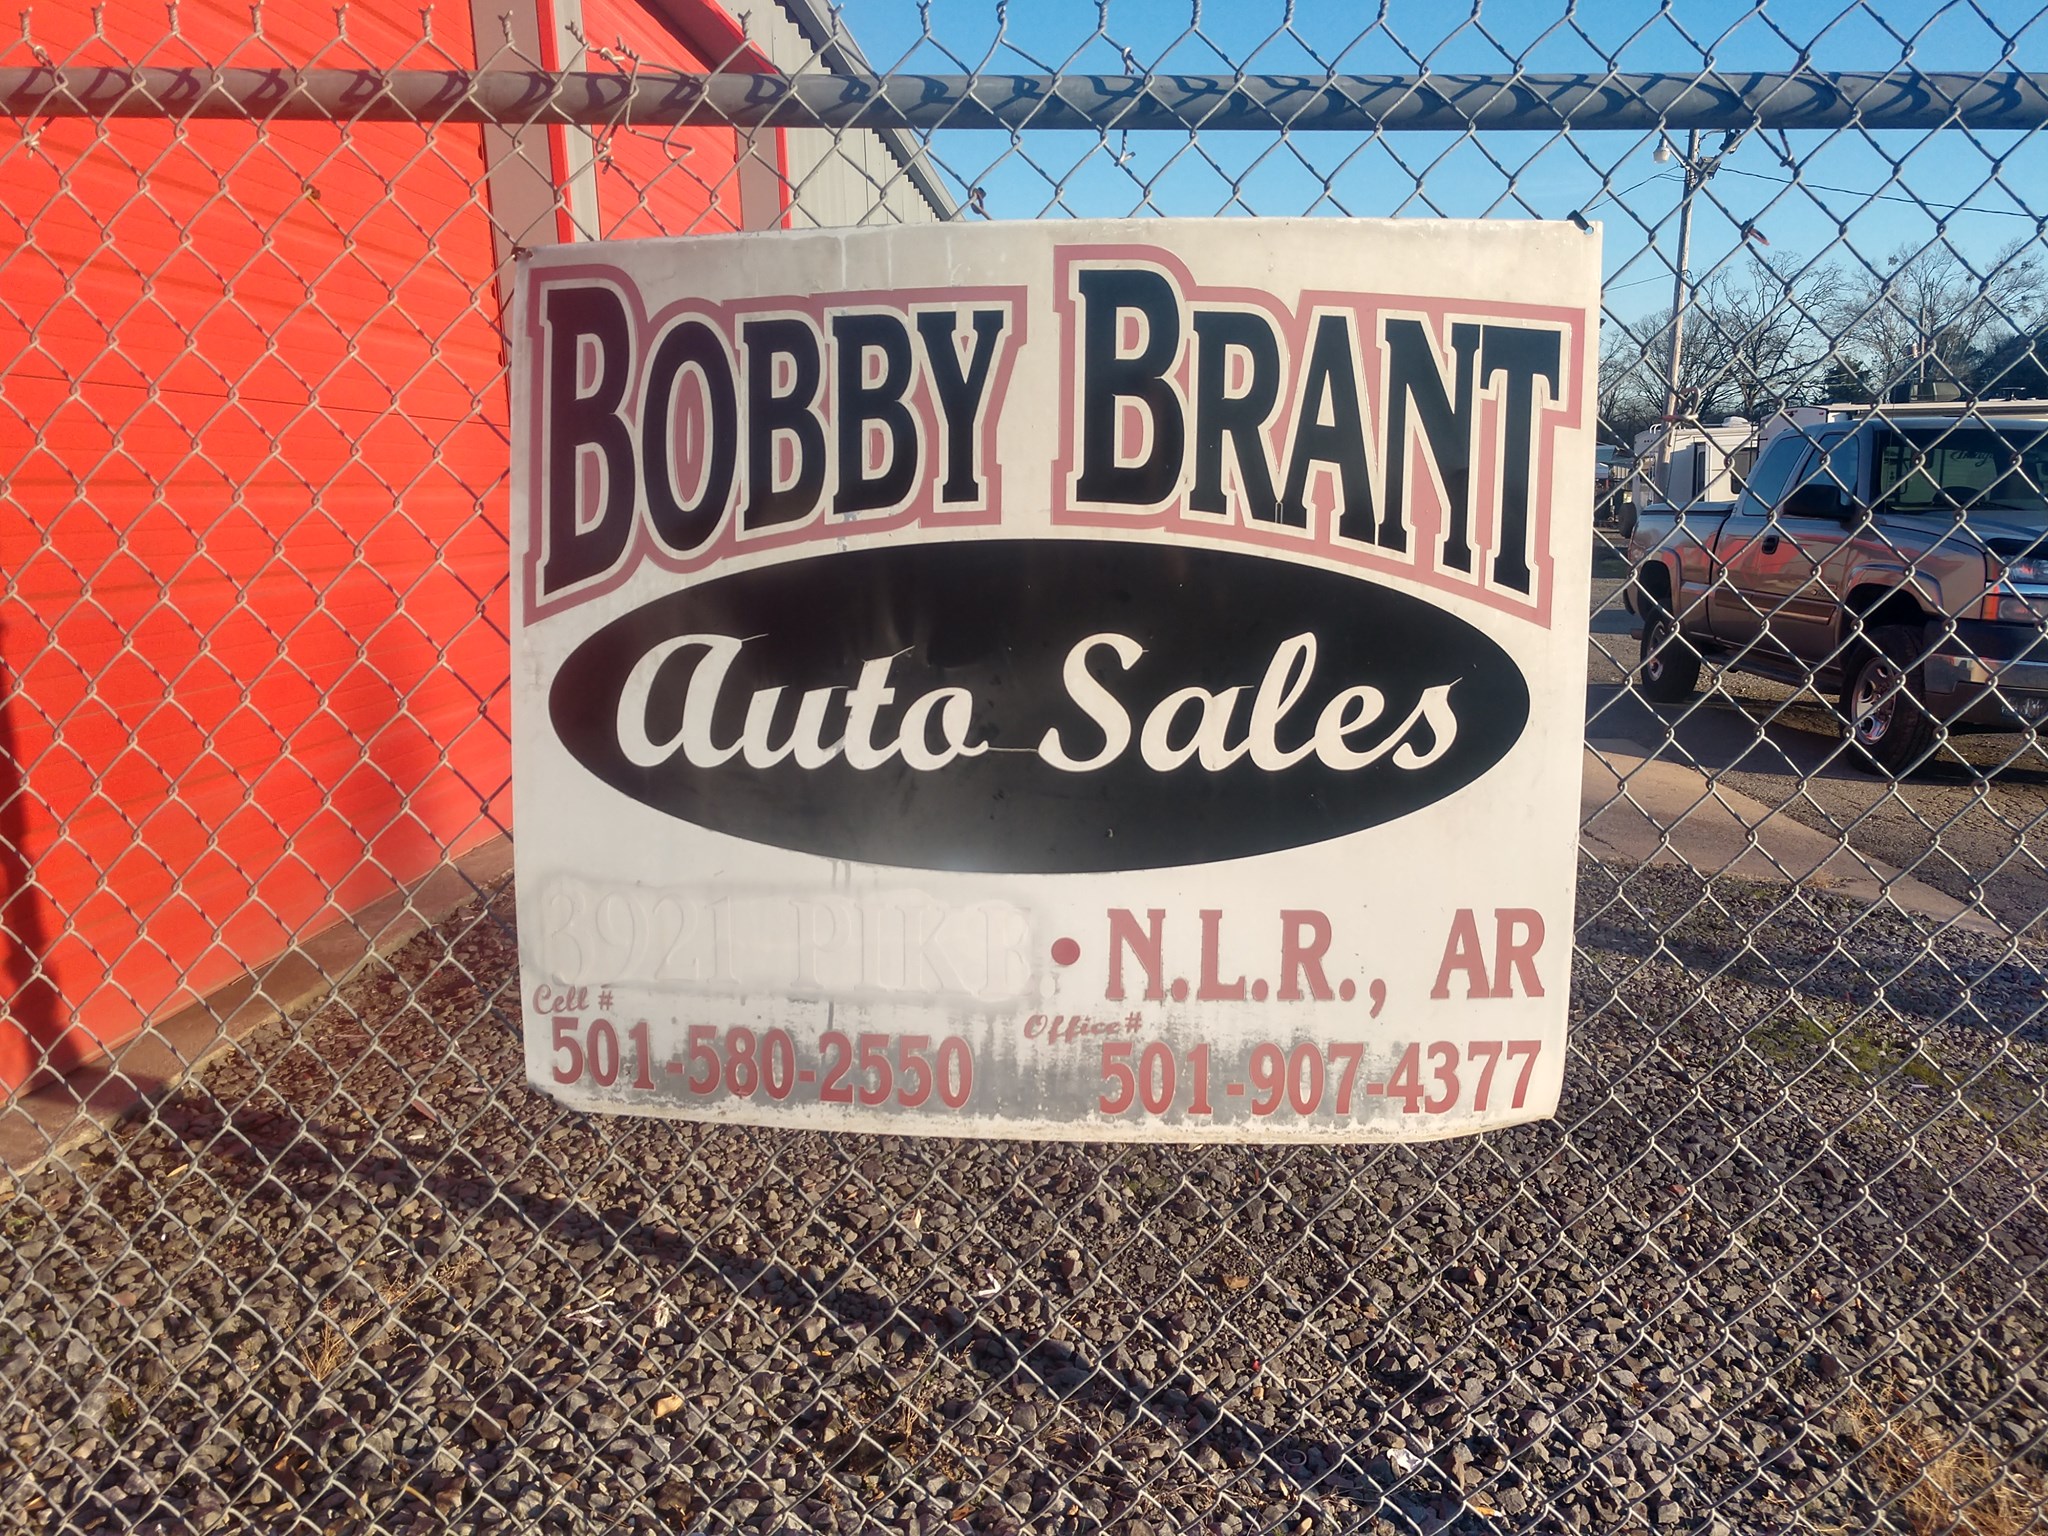 Bobby Brant Auto Sales